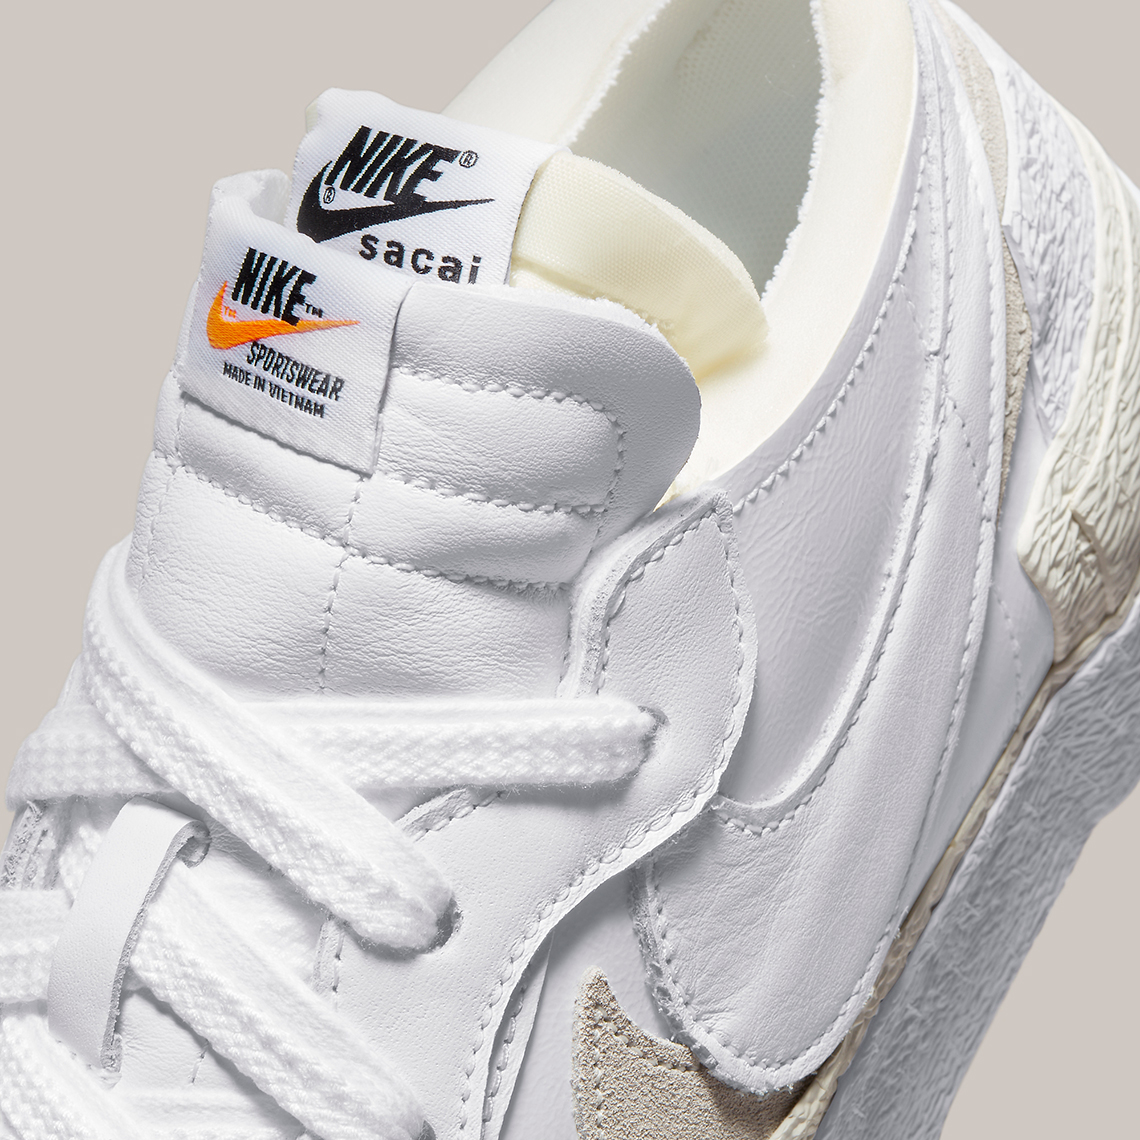 Sacai Nike Blazer Low White Tan Dm6443 100 1